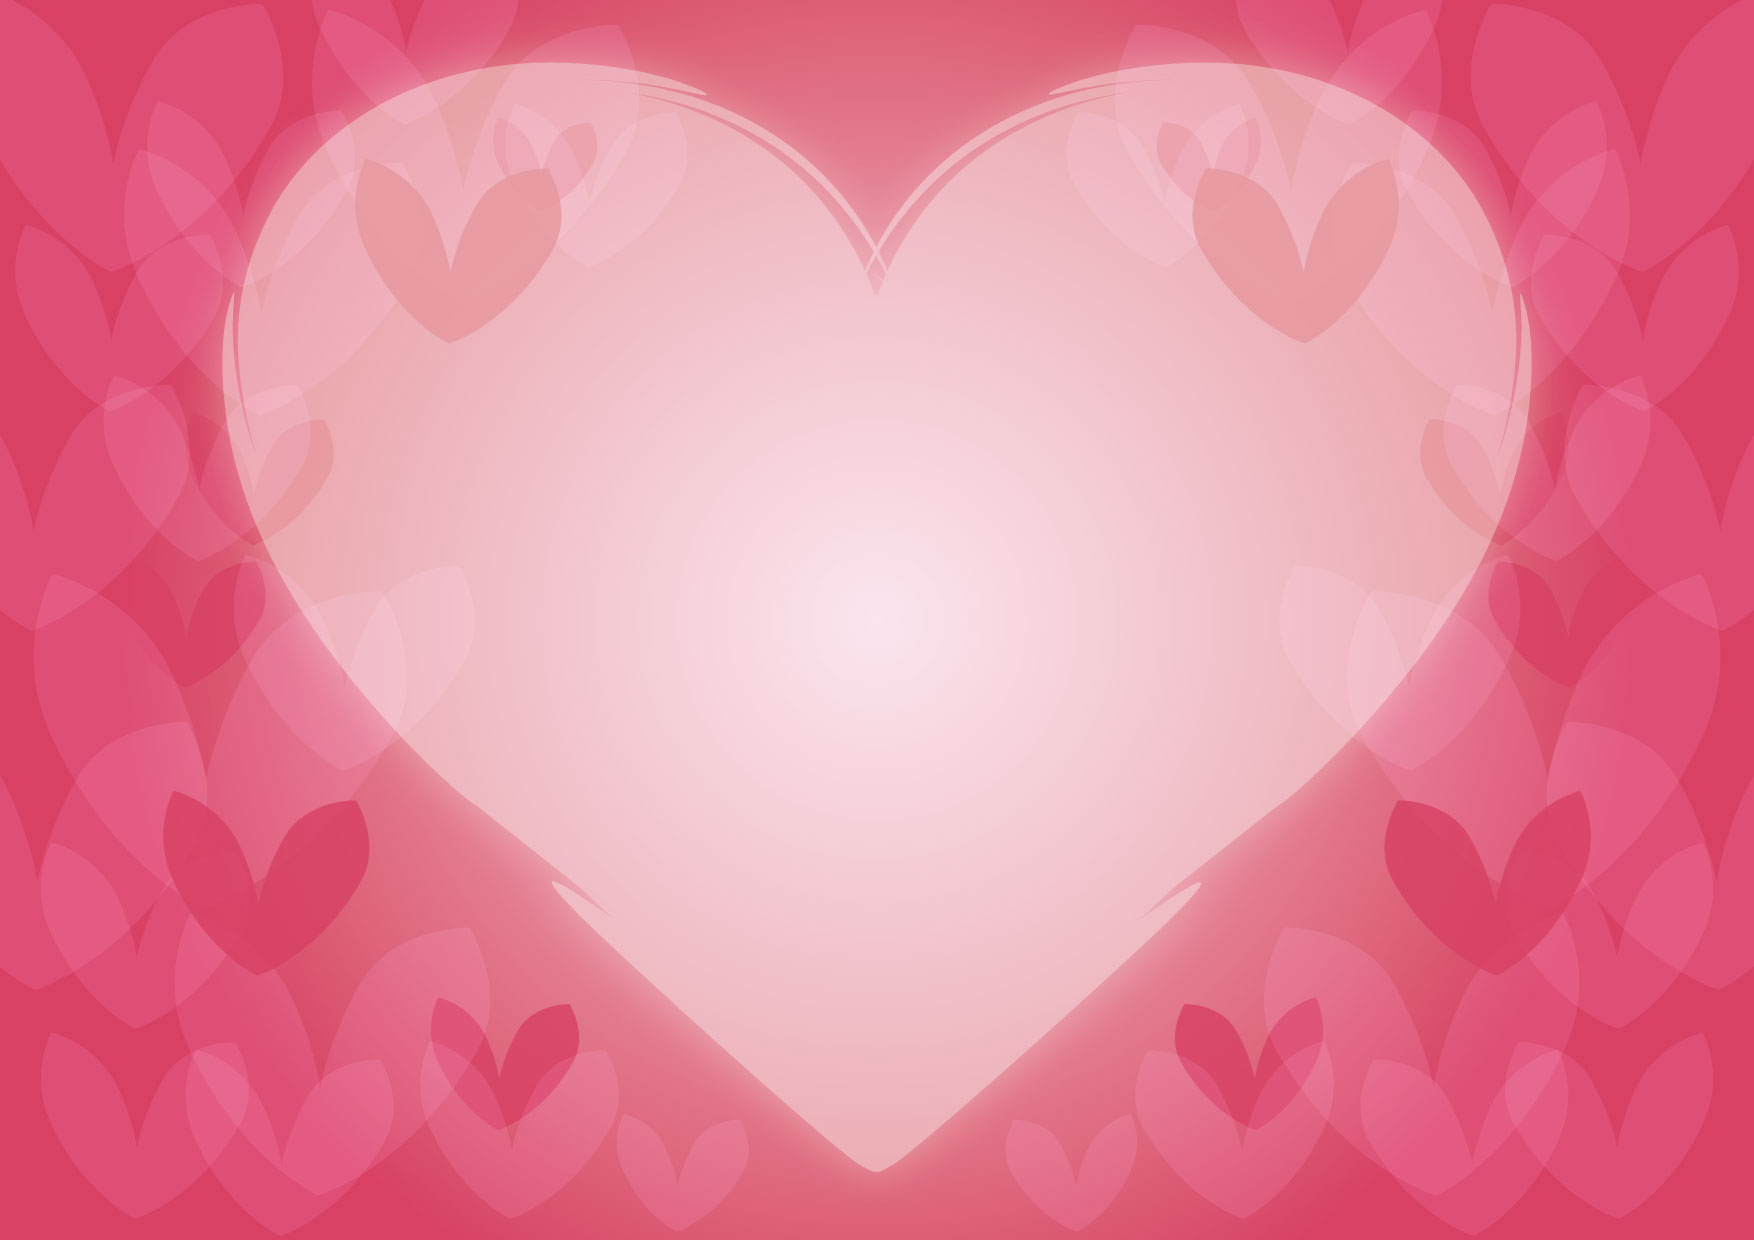 可愛いイラスト無料 バレンタイン ハート 背景 ピンク Free Illustration Valentine Heart Background Pink イラストダウンロード